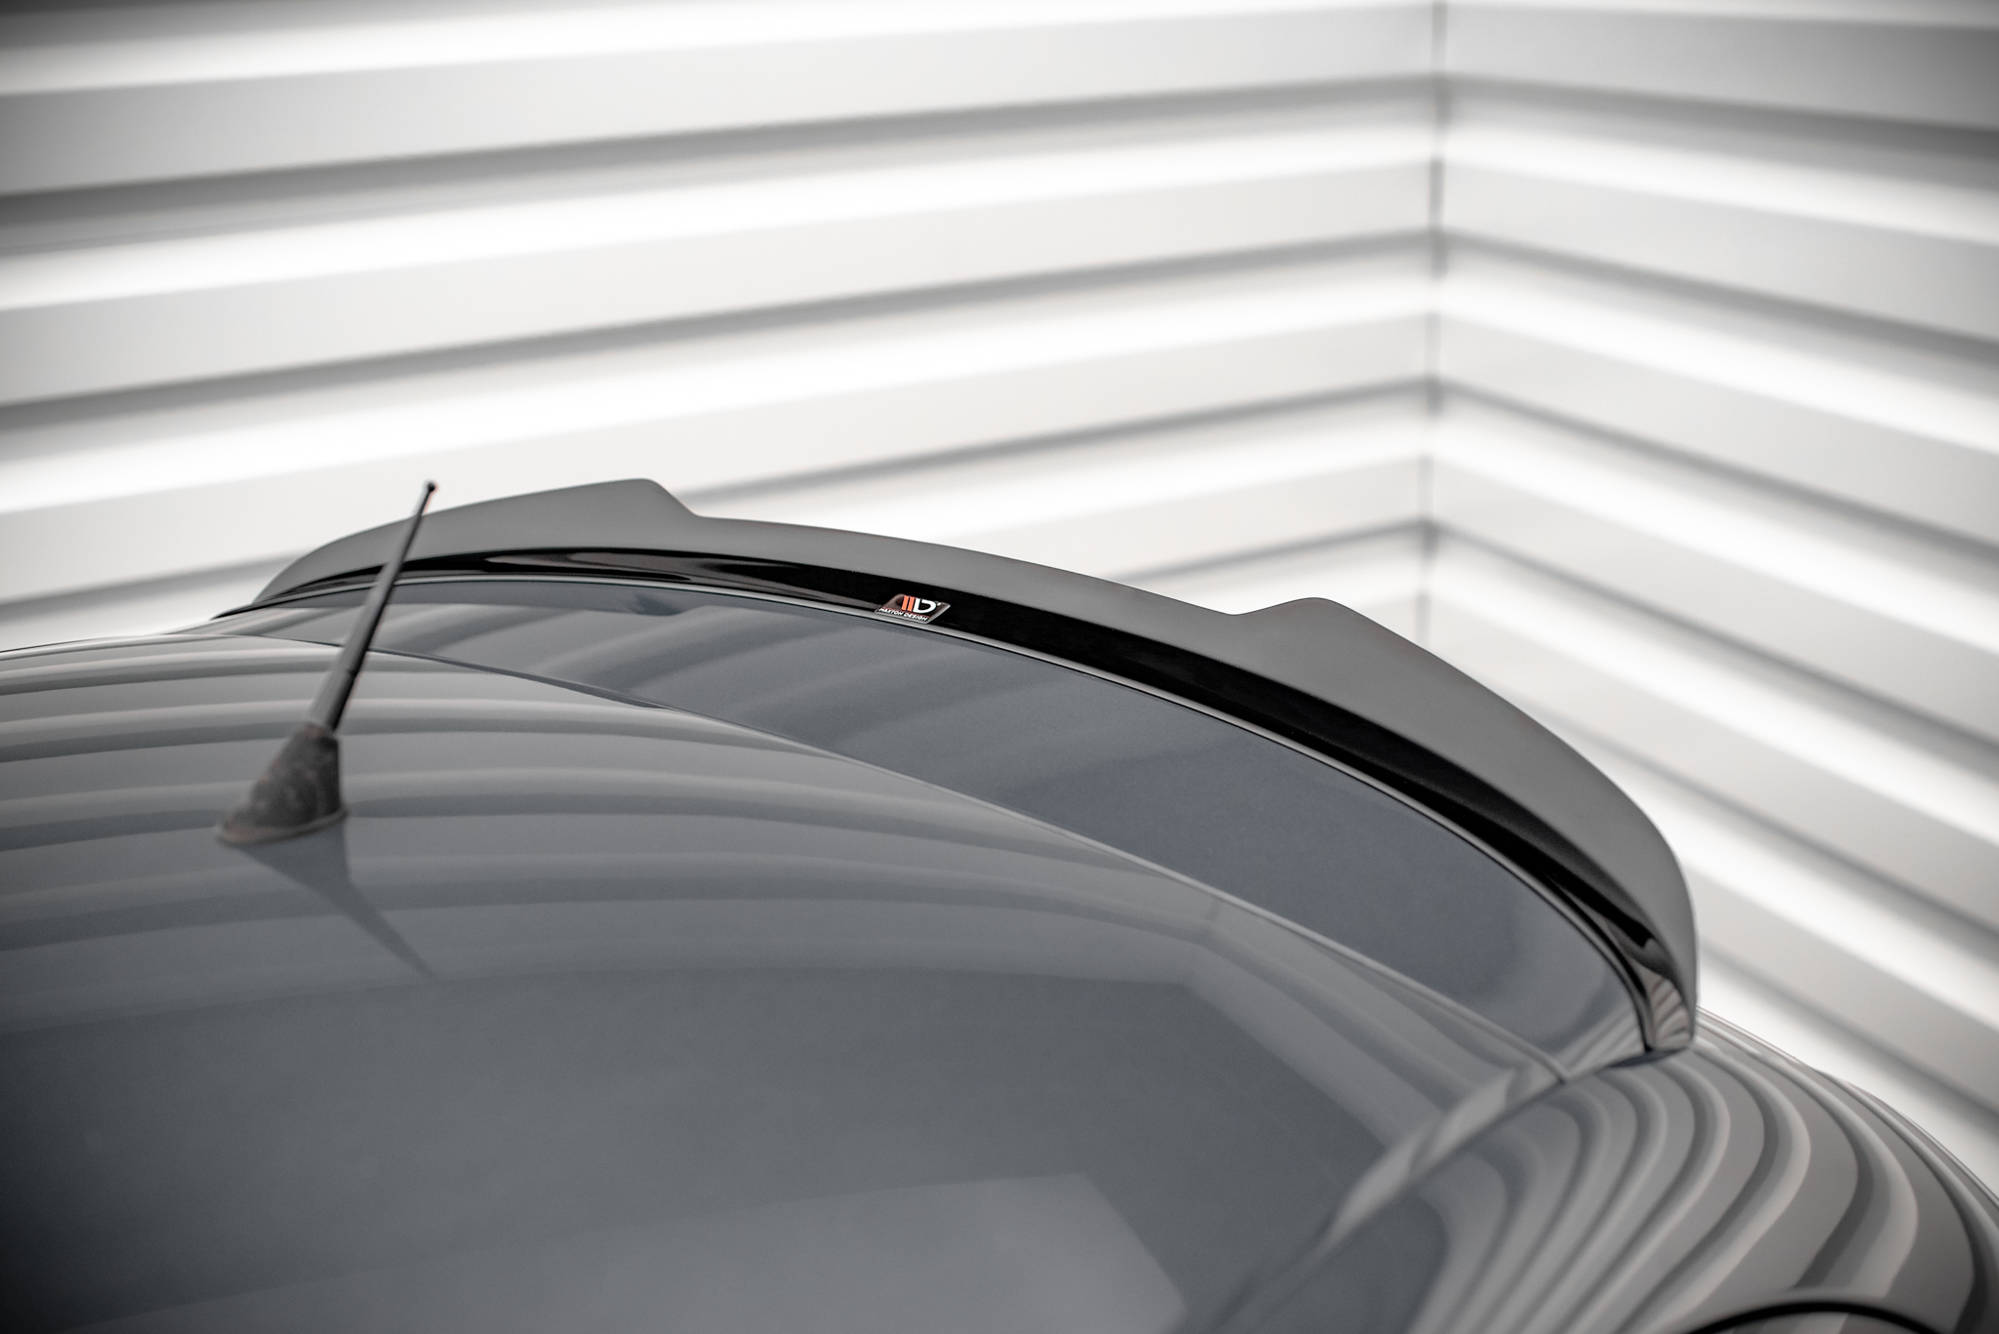 Maxton Design Spoiler CAP für Seat Ibiza Cupra Mk3 schwarz Hochglanz